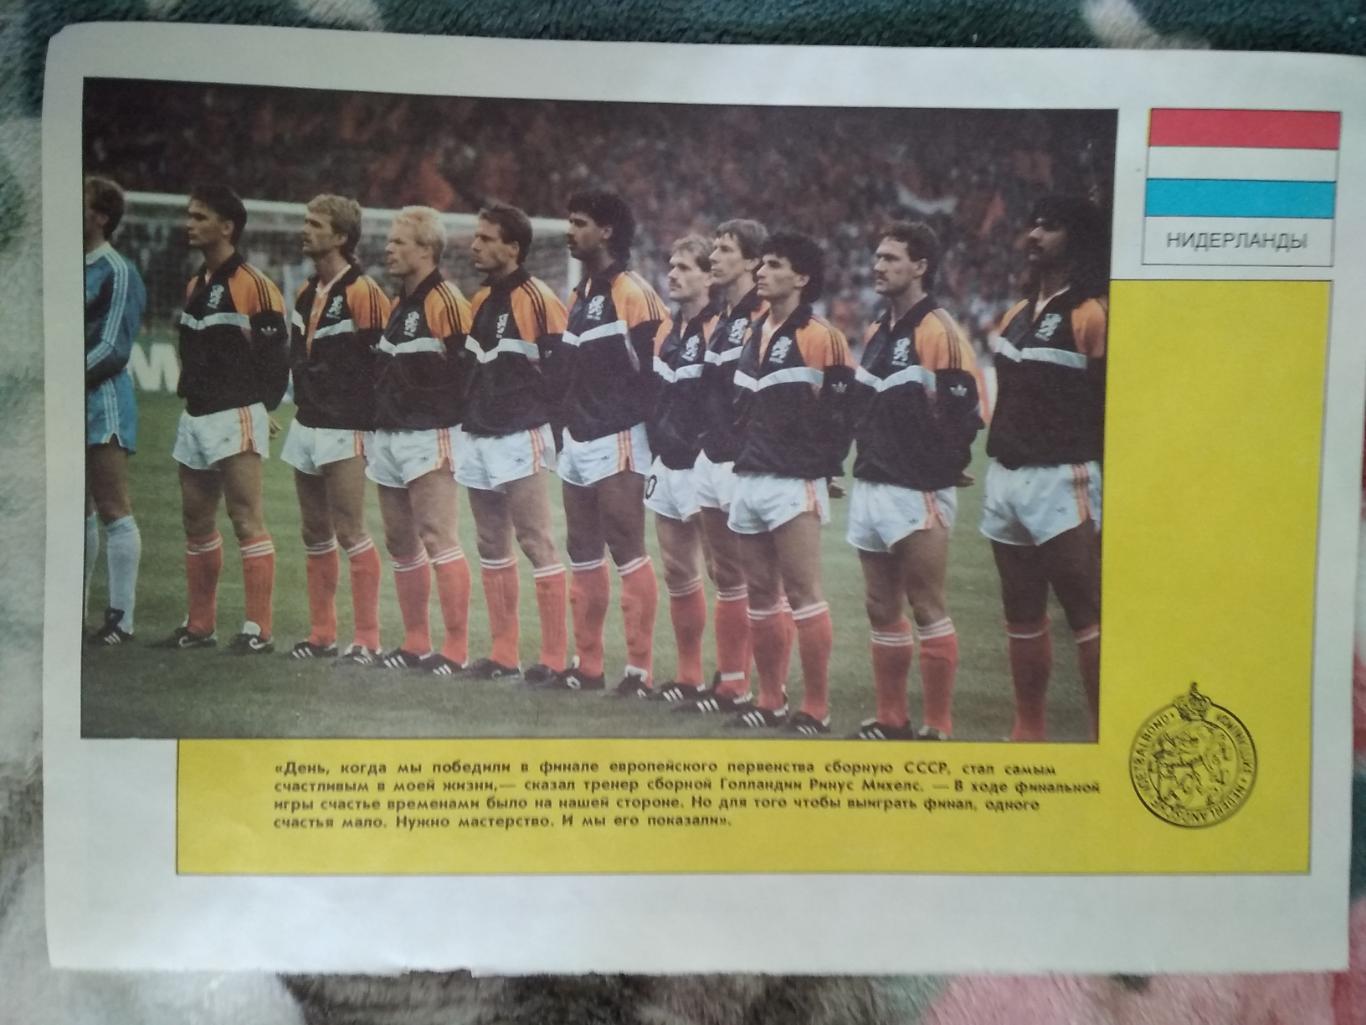 Постер.Футбол.Ирландия, Голландия.Чемпионат Европы 1988. 1